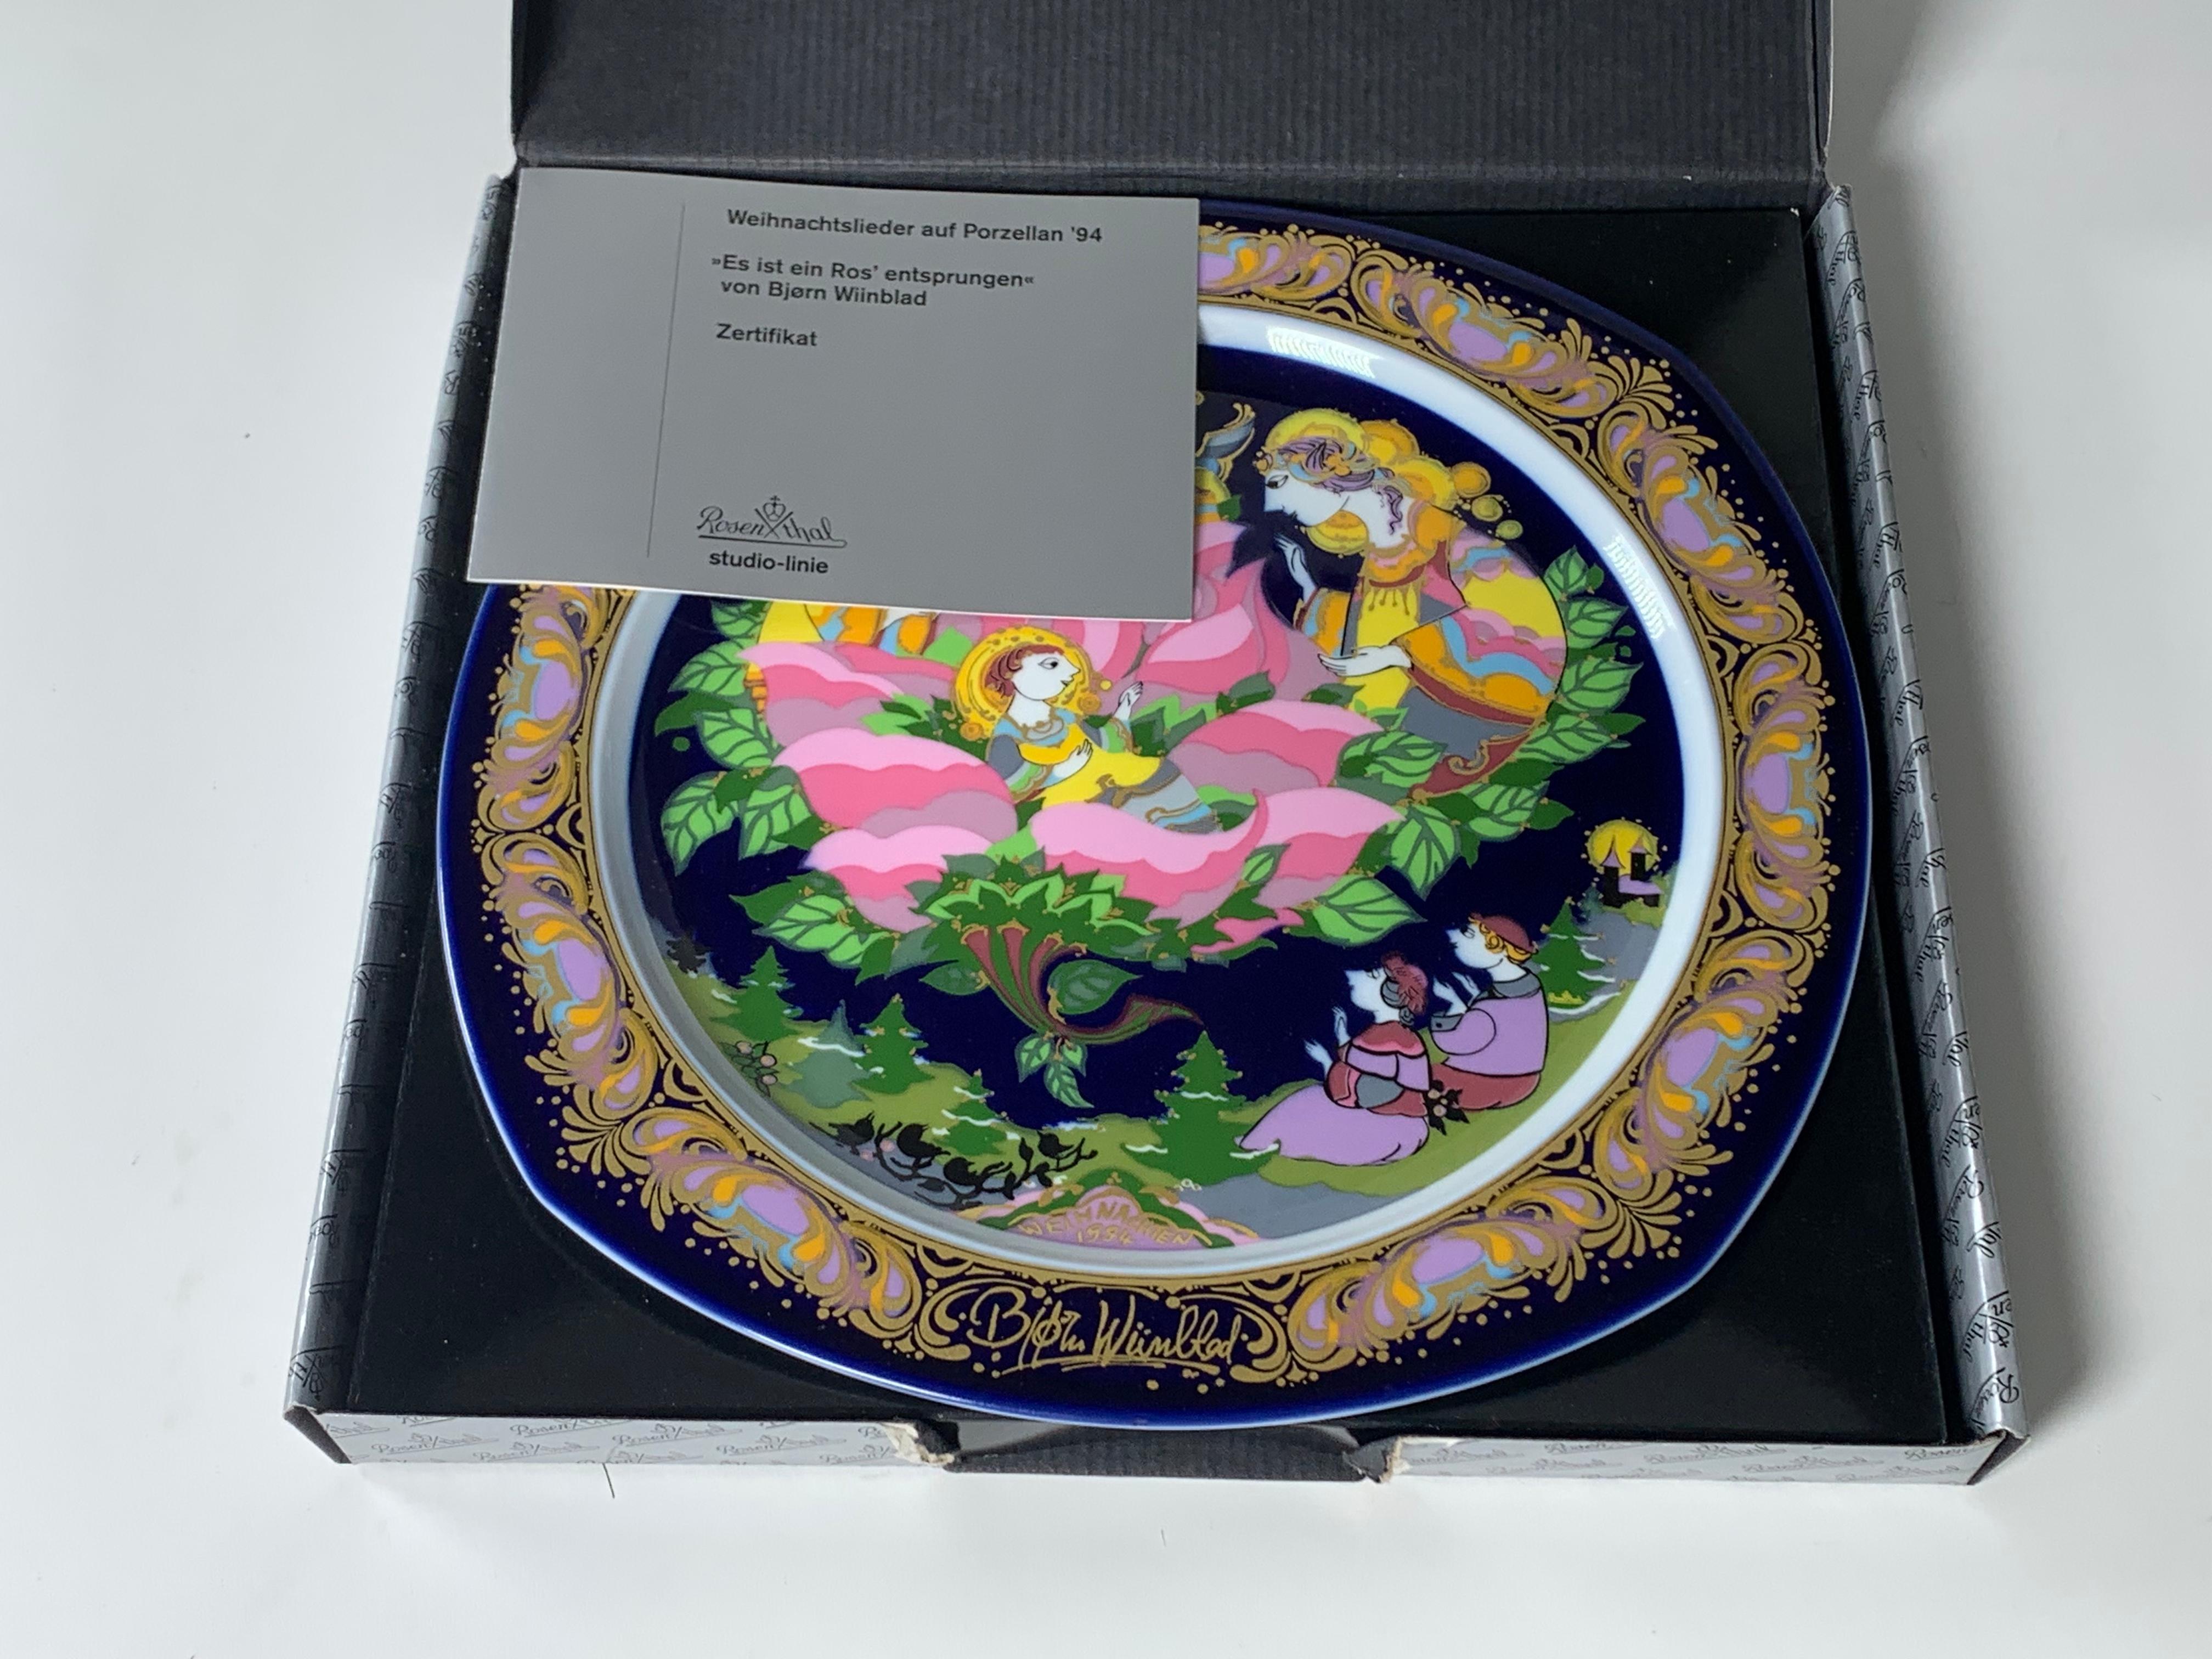 Assiette de Noël en porcelaine de 1994 de Bjorn Wiinblad réalisée par le fabricant allemand Rosenthal. Le plat s'intitule 